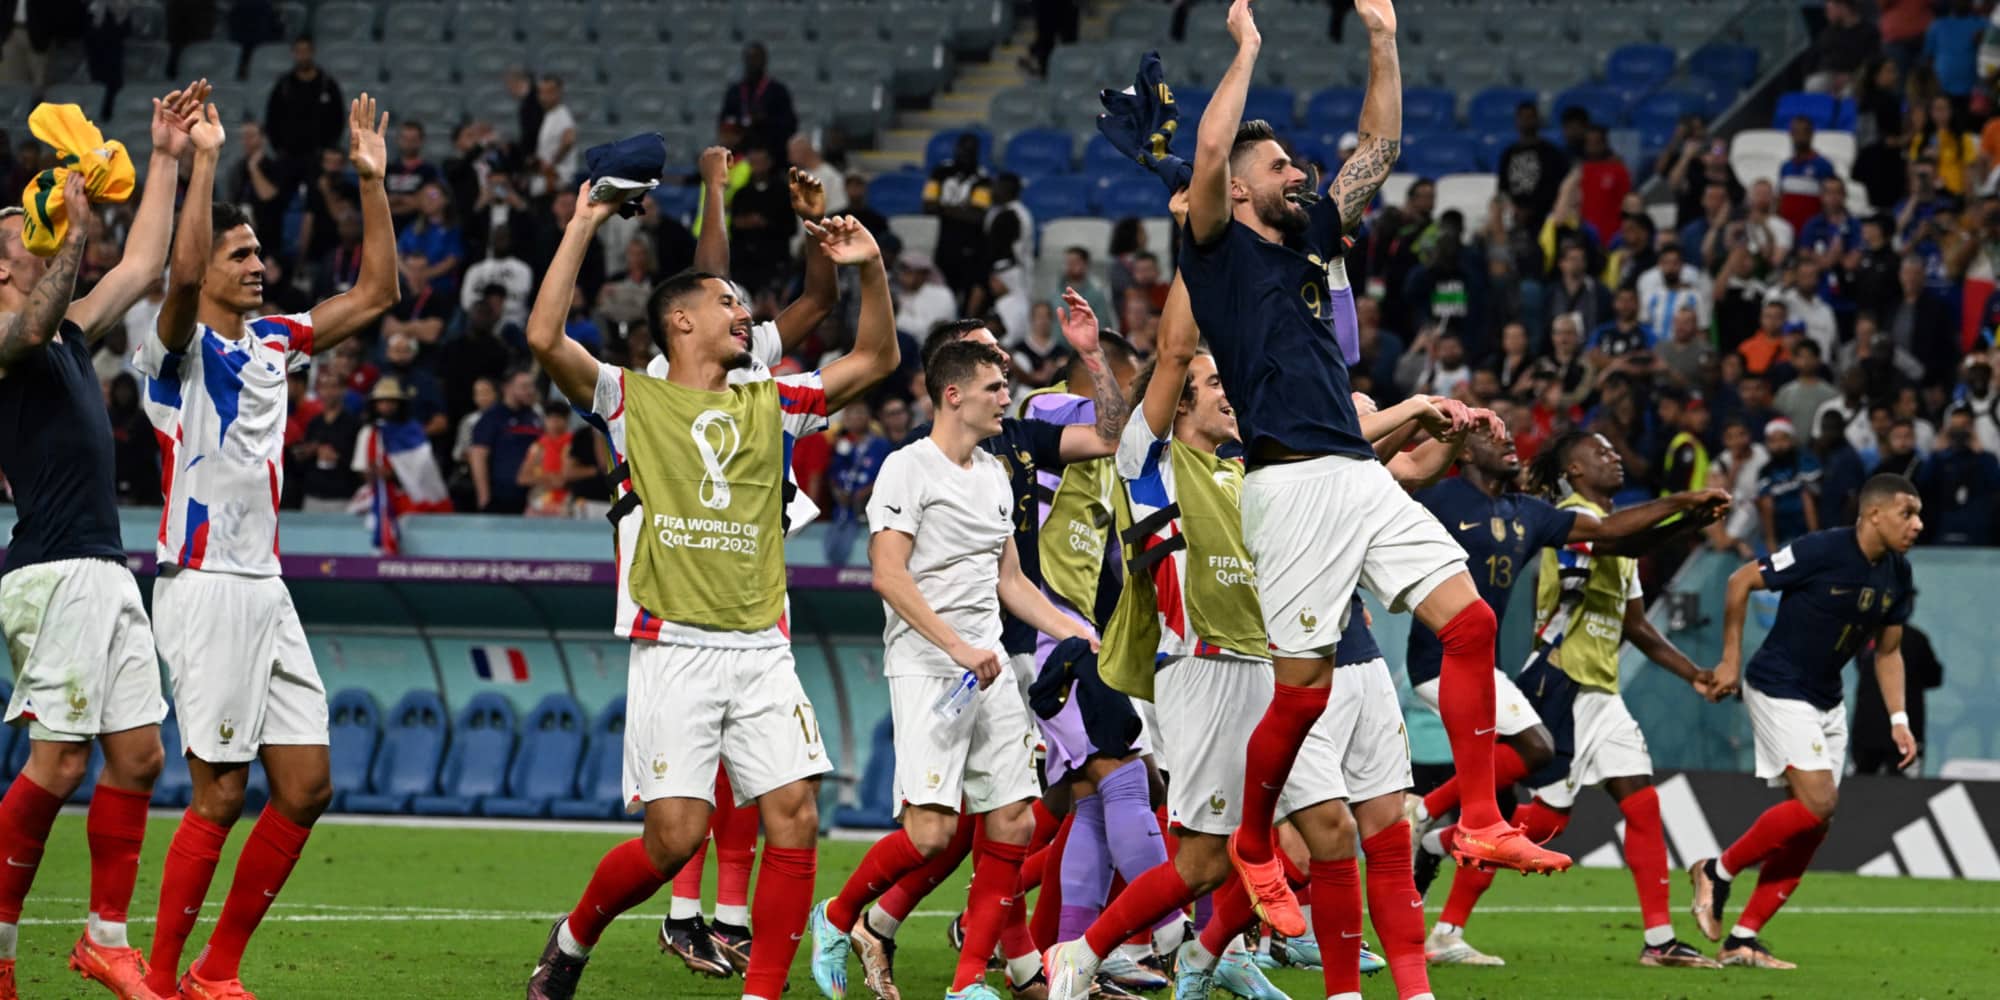 المنتخب الفرنسي أول منتخب يبلغ ثمن نهائي مونديال قطر